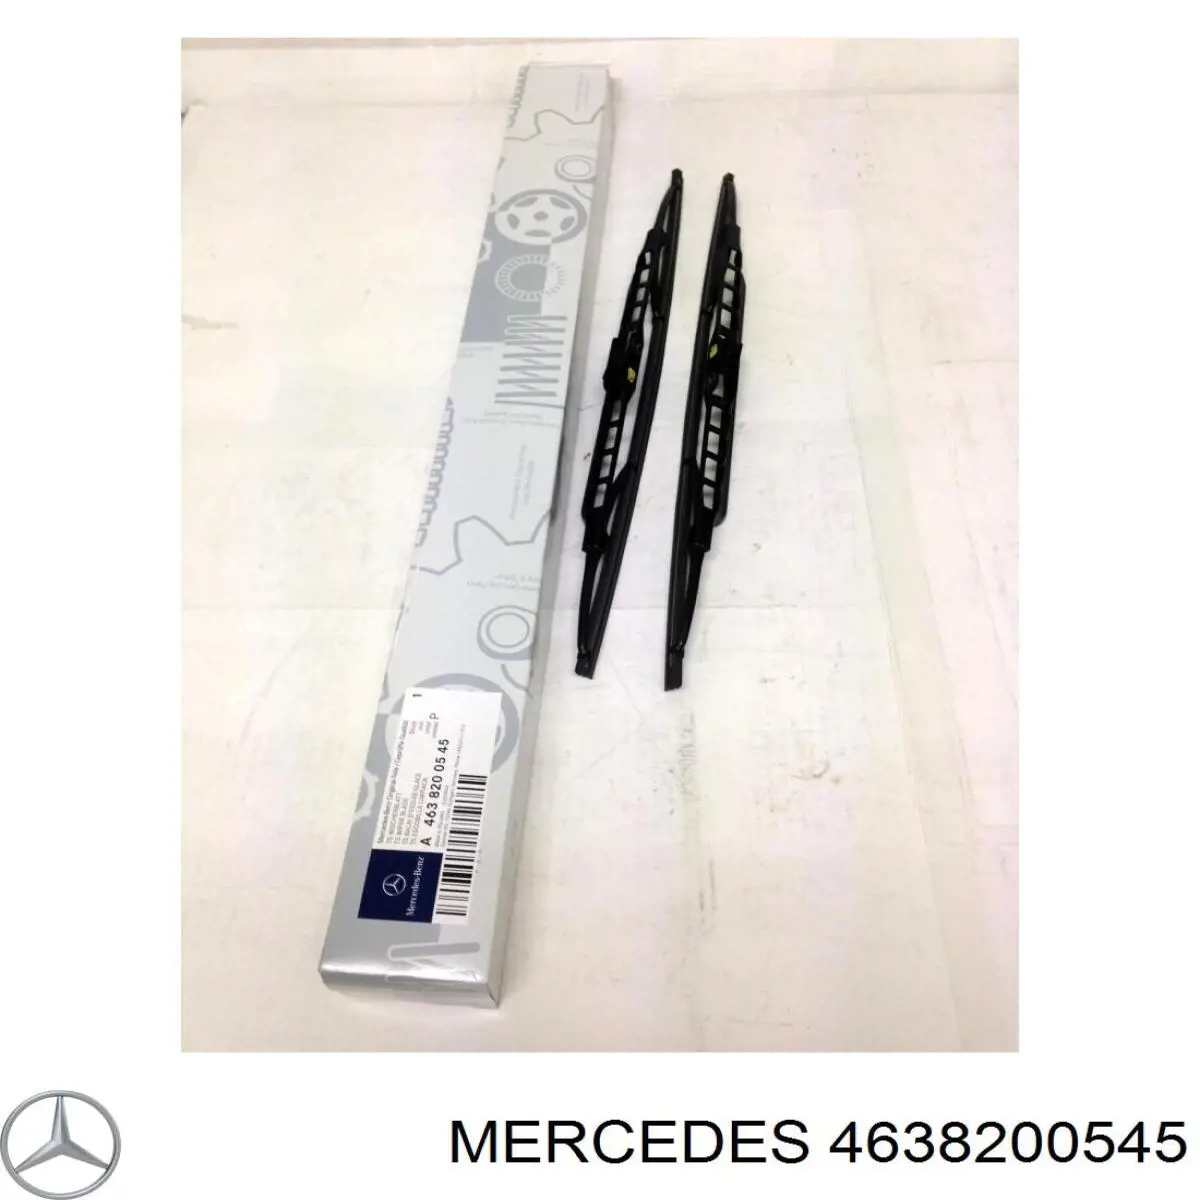 4638200145 Mercedes щетка-дворник лобового стекла, комплект из 2 шт.